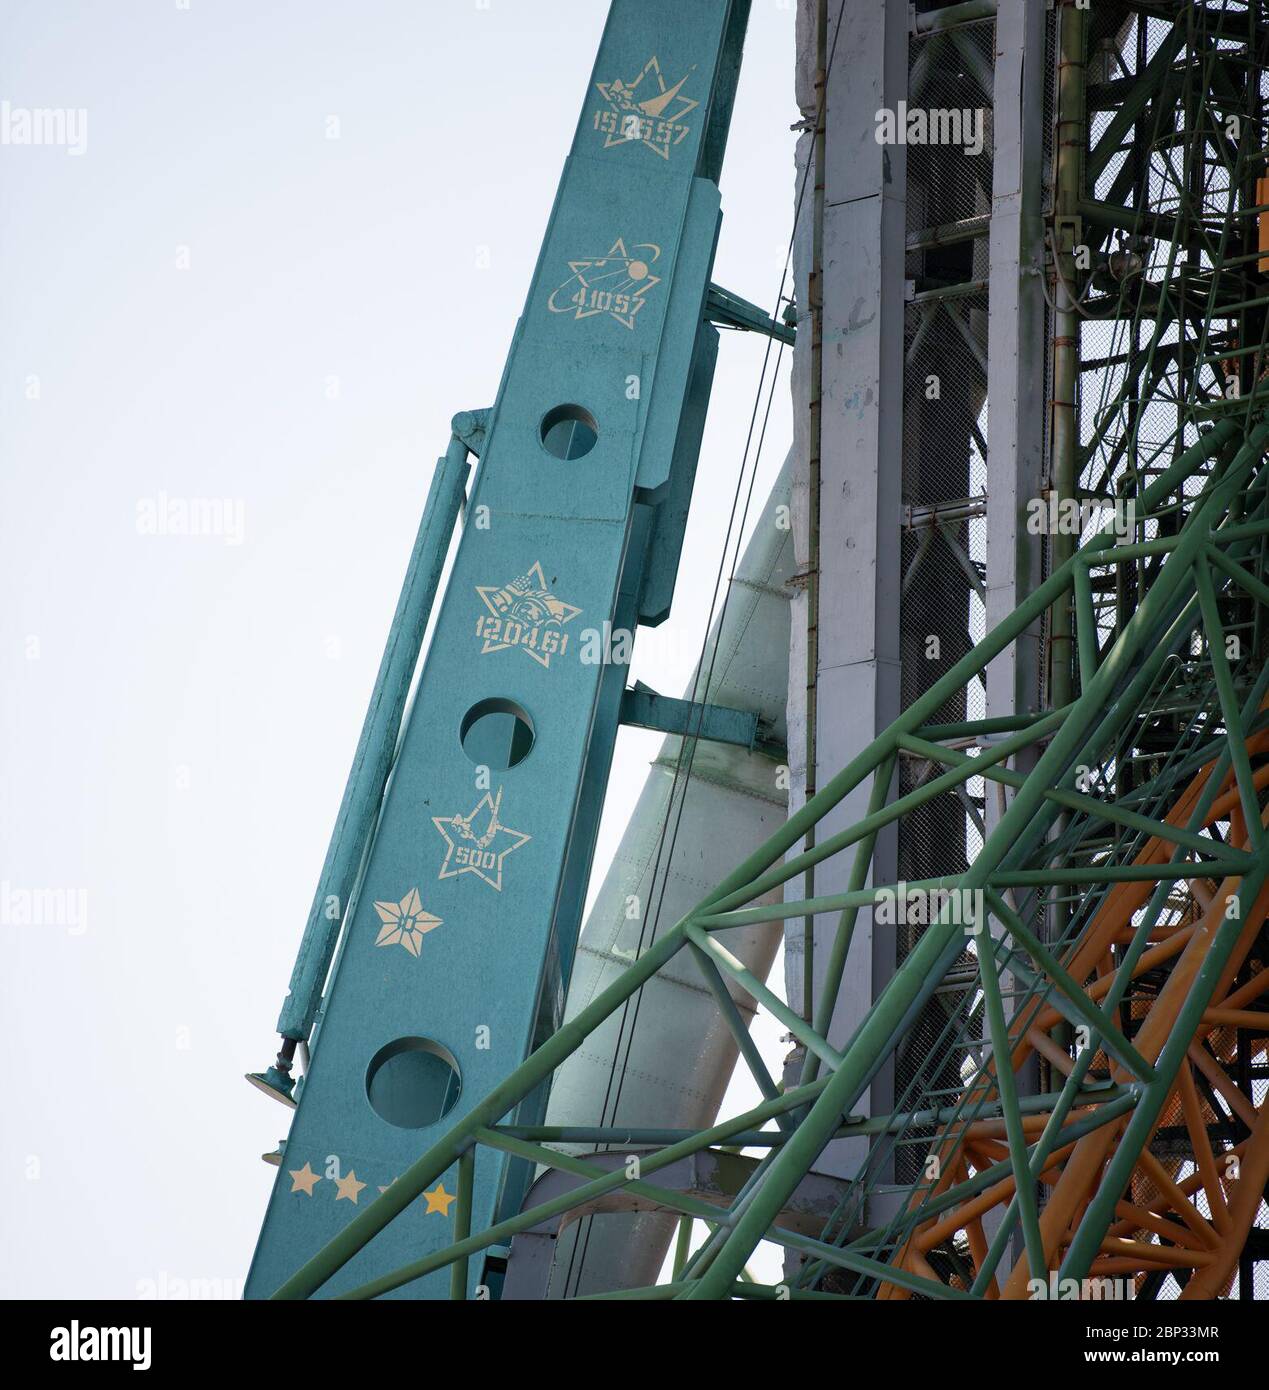 Expedition 60 Preflight die am Freitag, den 19. Juli 2019, gesehenen Markierungen auf der Servicestruktur von Site 1 am Kosmodrom Baikonur zeigen die Meilensteine, die durch Starts vom historischen Block erreicht wurden. Die Markierungen erinnern an den ersten Start von der Matte am 15. Mai 1957, den Start von Sputnik 1 am 4. Oktober 1957, den Start des ersten Menschen, der die Erde umkreist, Juri Gagarin, am 12. April 1961, Und die Tatsache, dass das Pad seit seiner Errichtung der Ort von über 500 Starts von verschiedenen Raketen gewesen ist. Expedition 60 Sojus Kommandant Alexander Skwortsov Roskosmos, Flugingenieur zog Morgan von Stockfoto